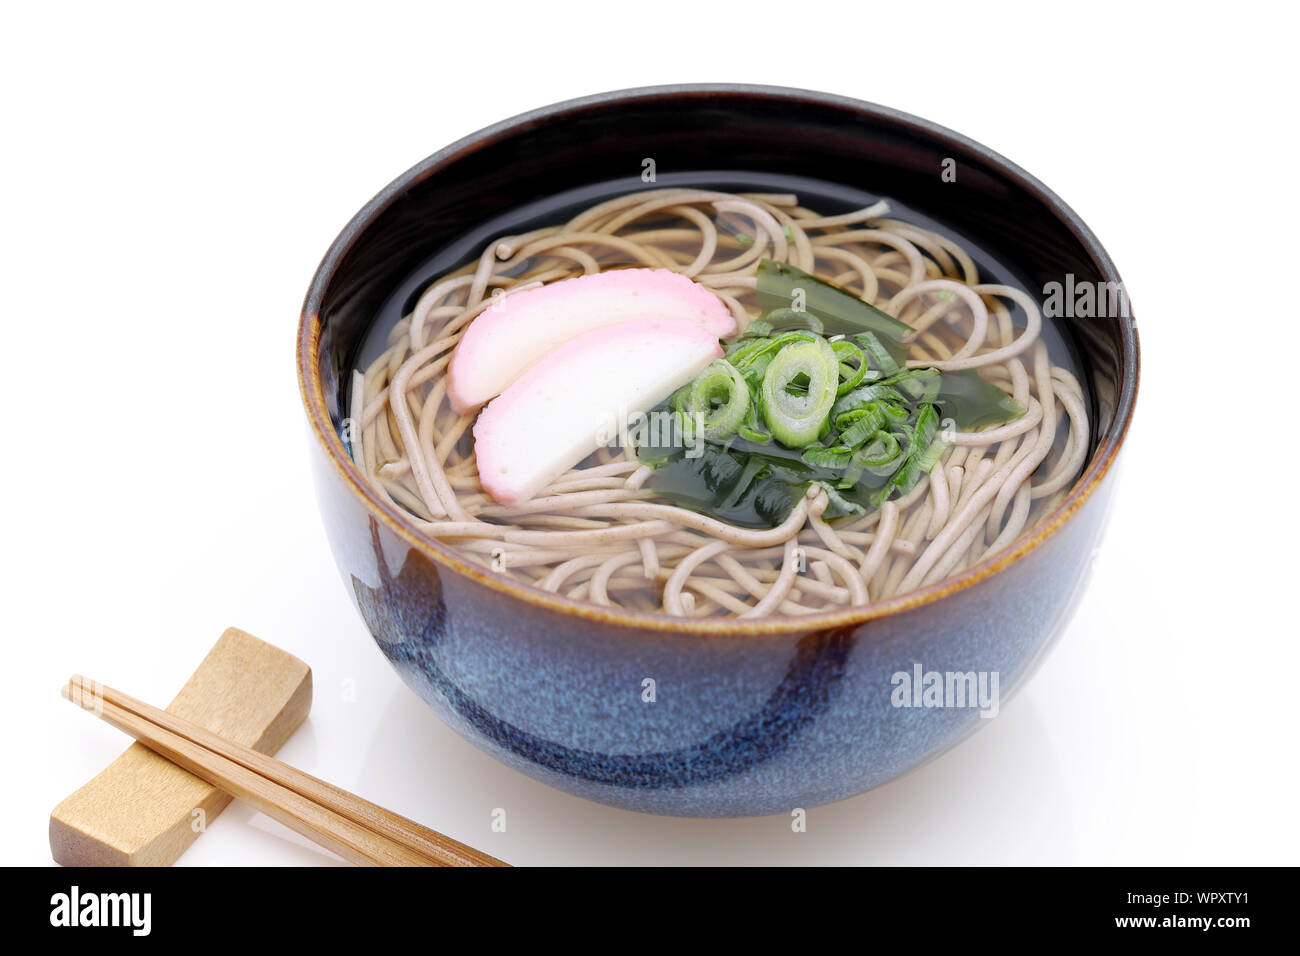 Japanese Kake soba noodles in a ceramic bowl Stock Photo